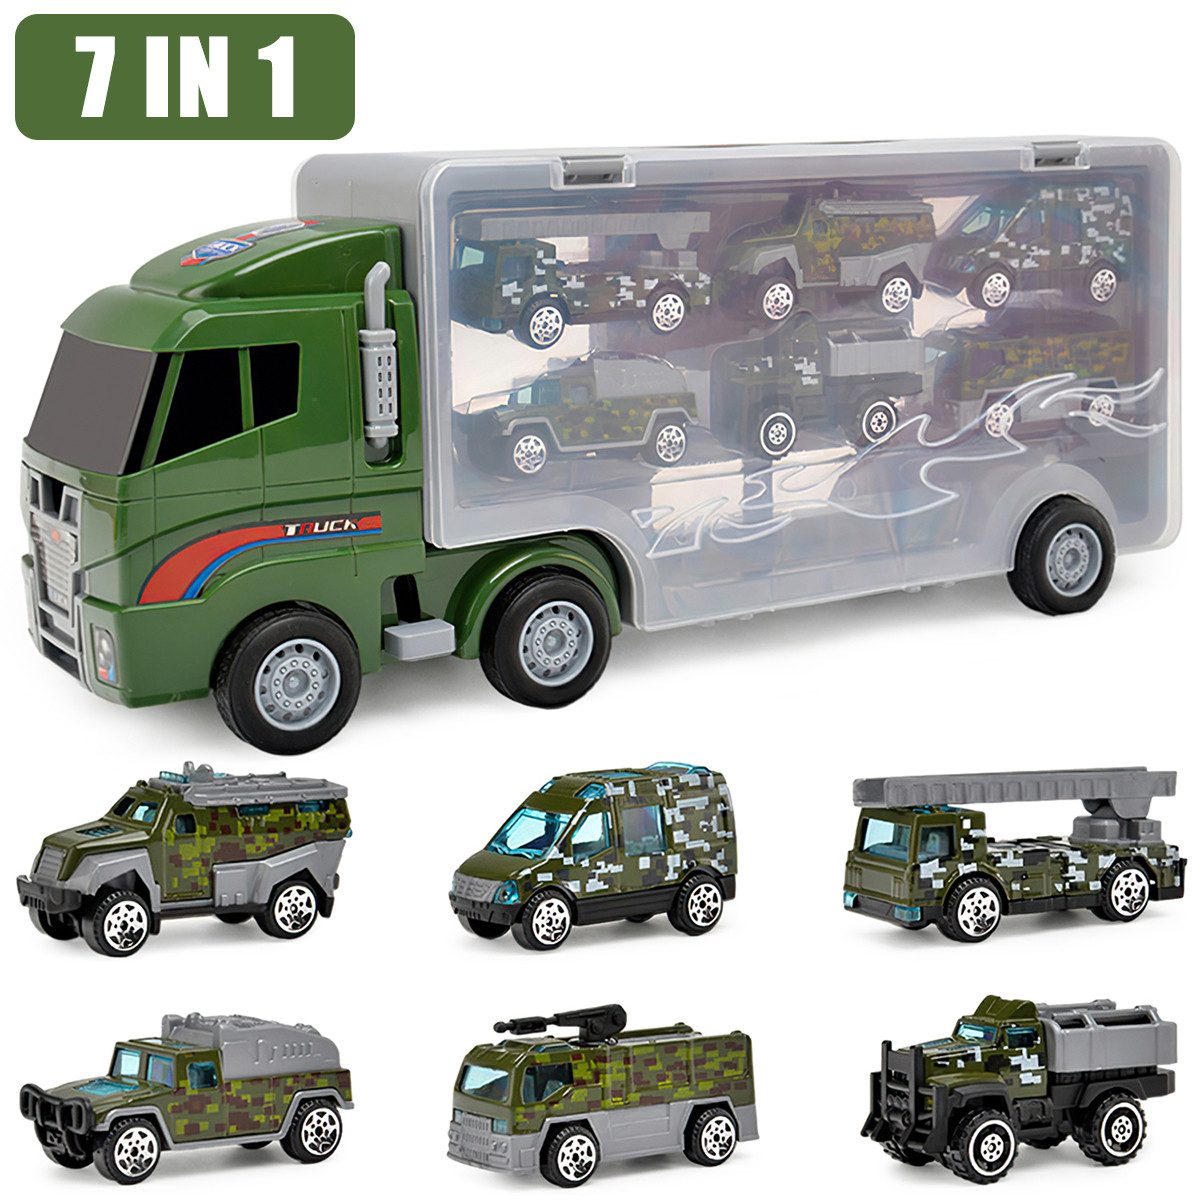 Cbei Spielzeug-Transporter Spielzeug-Transporter Spielzeug-Abschlepper7-in-1 LKW Tragekoffer grün, (34*9.5*14.5cm, 6 Räder für den Fahrbetrieb und die Sitzstabilisierung), 7 Stück (1X großer Bagger, 6X Alu-LKW)